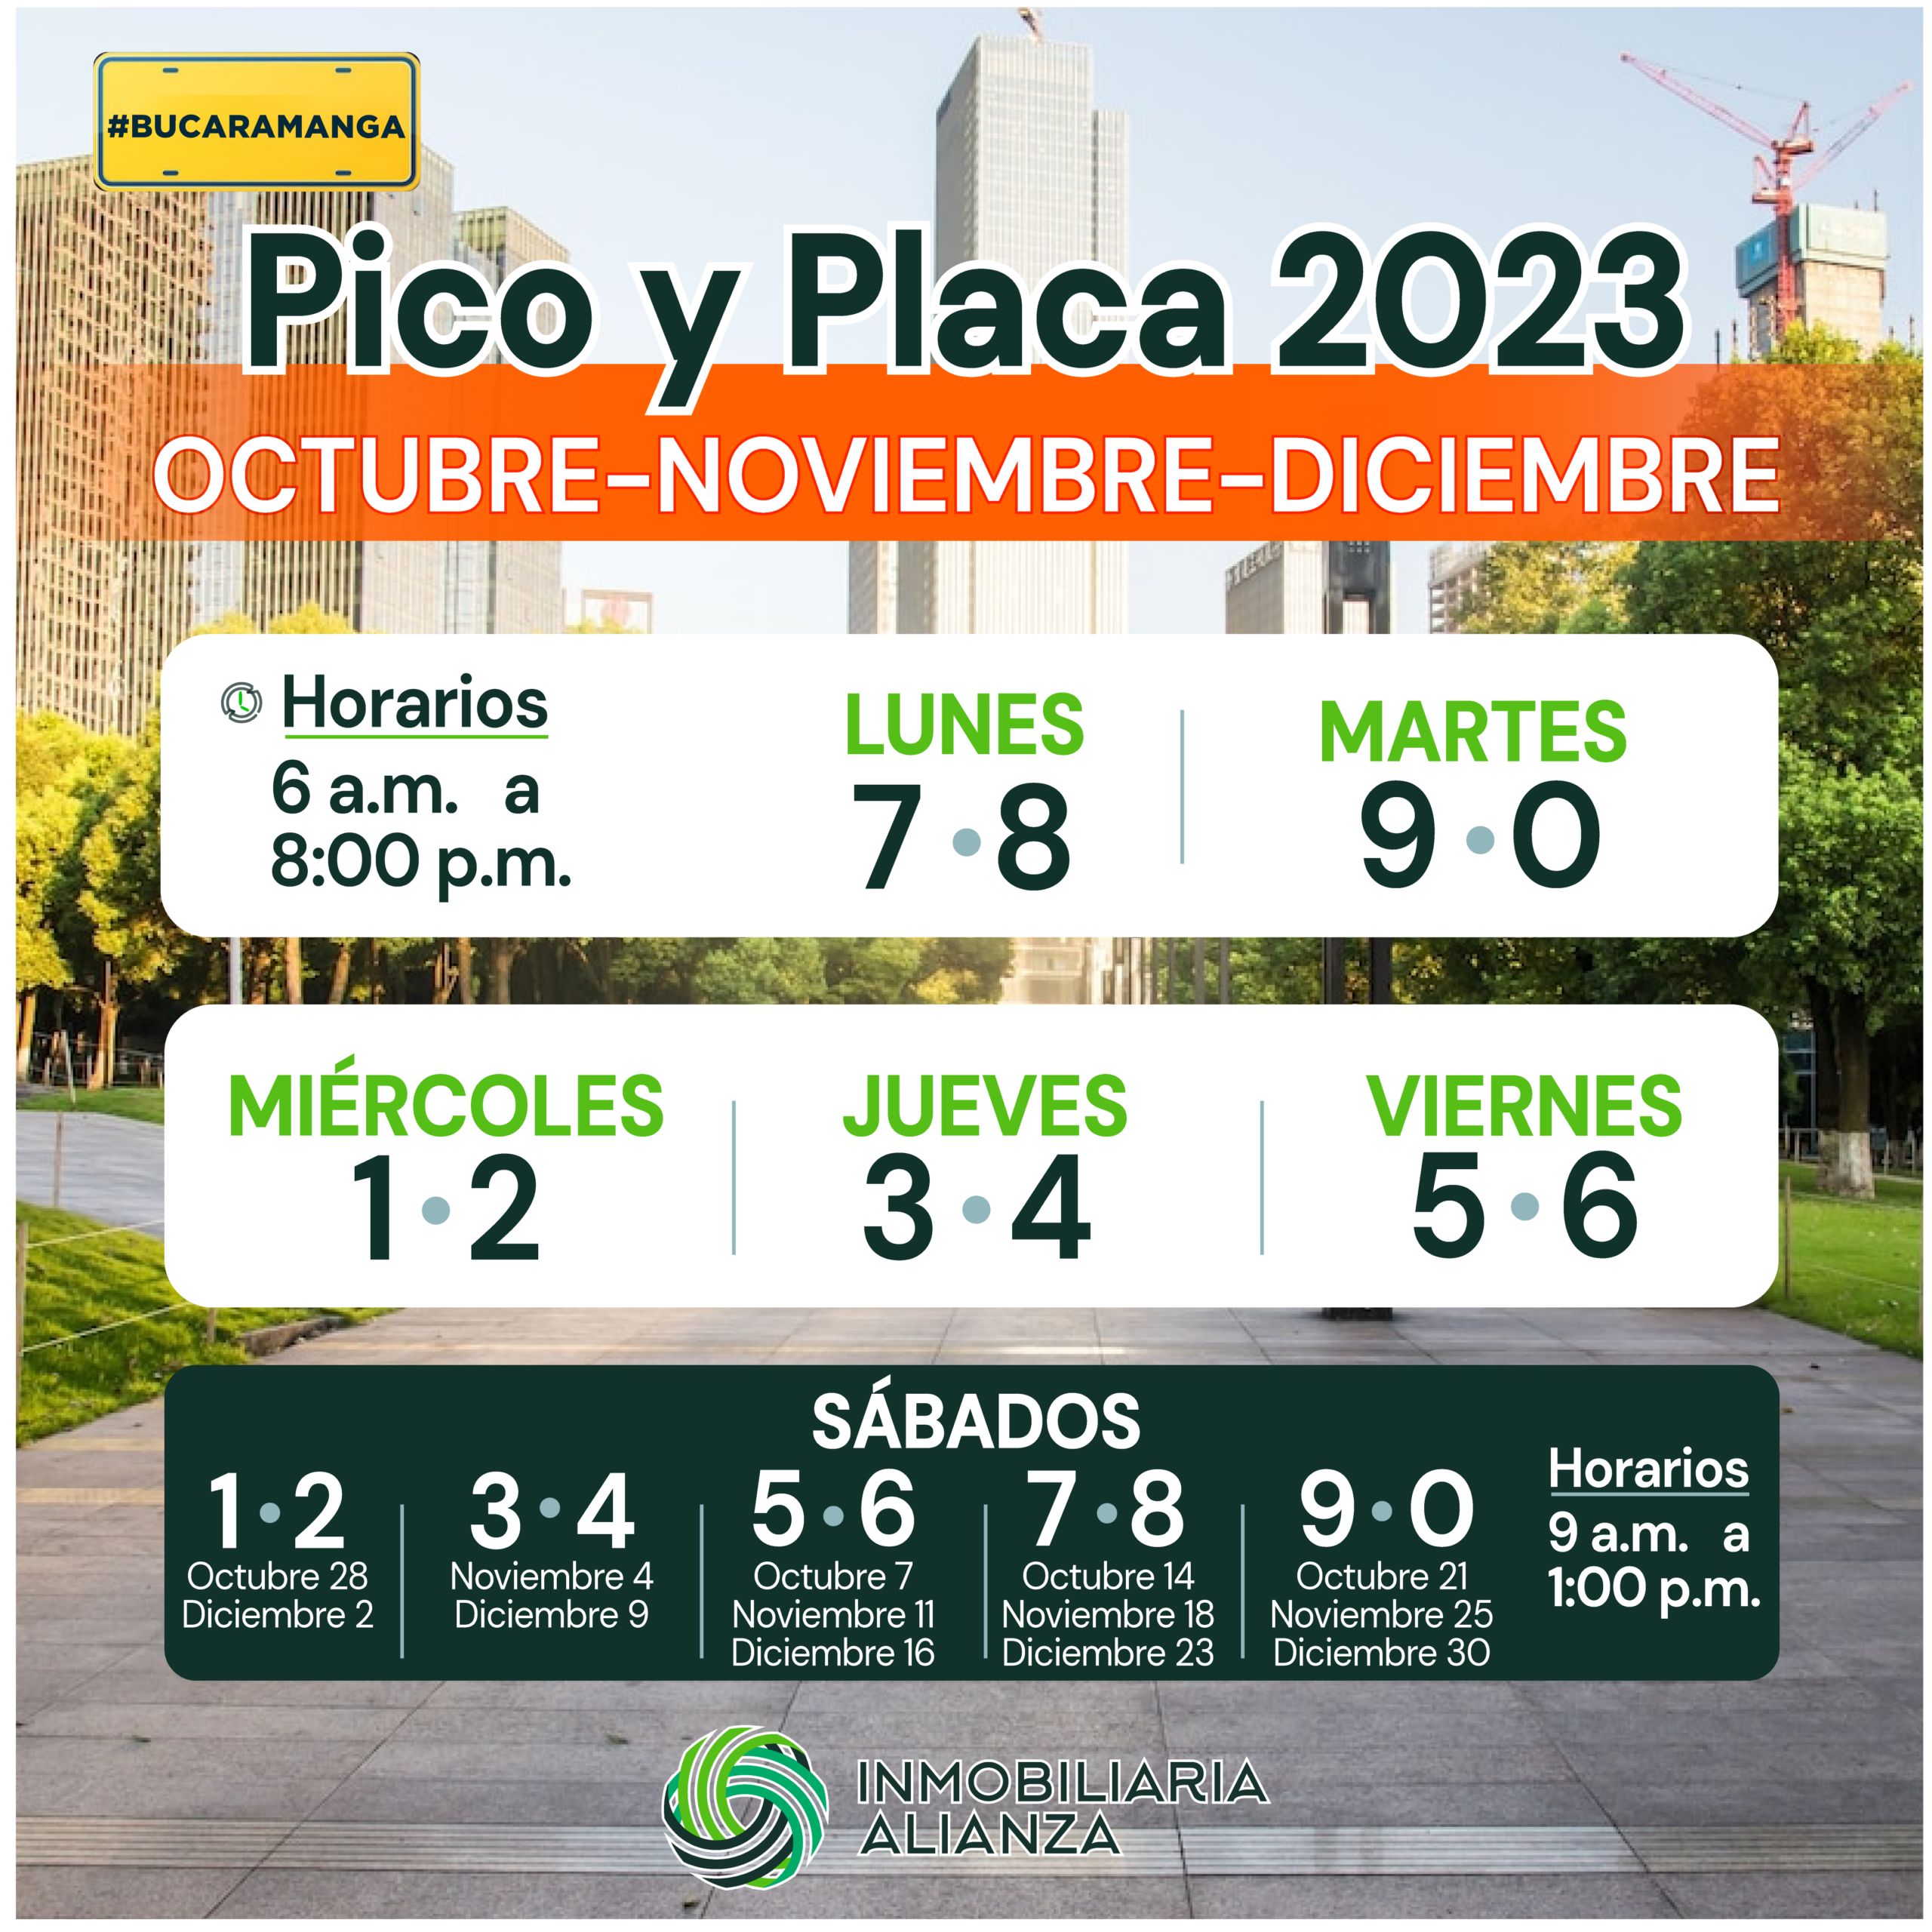 Nueva rotación del Pico y Placa a partir de Octubre 2023 en Bucaramanga